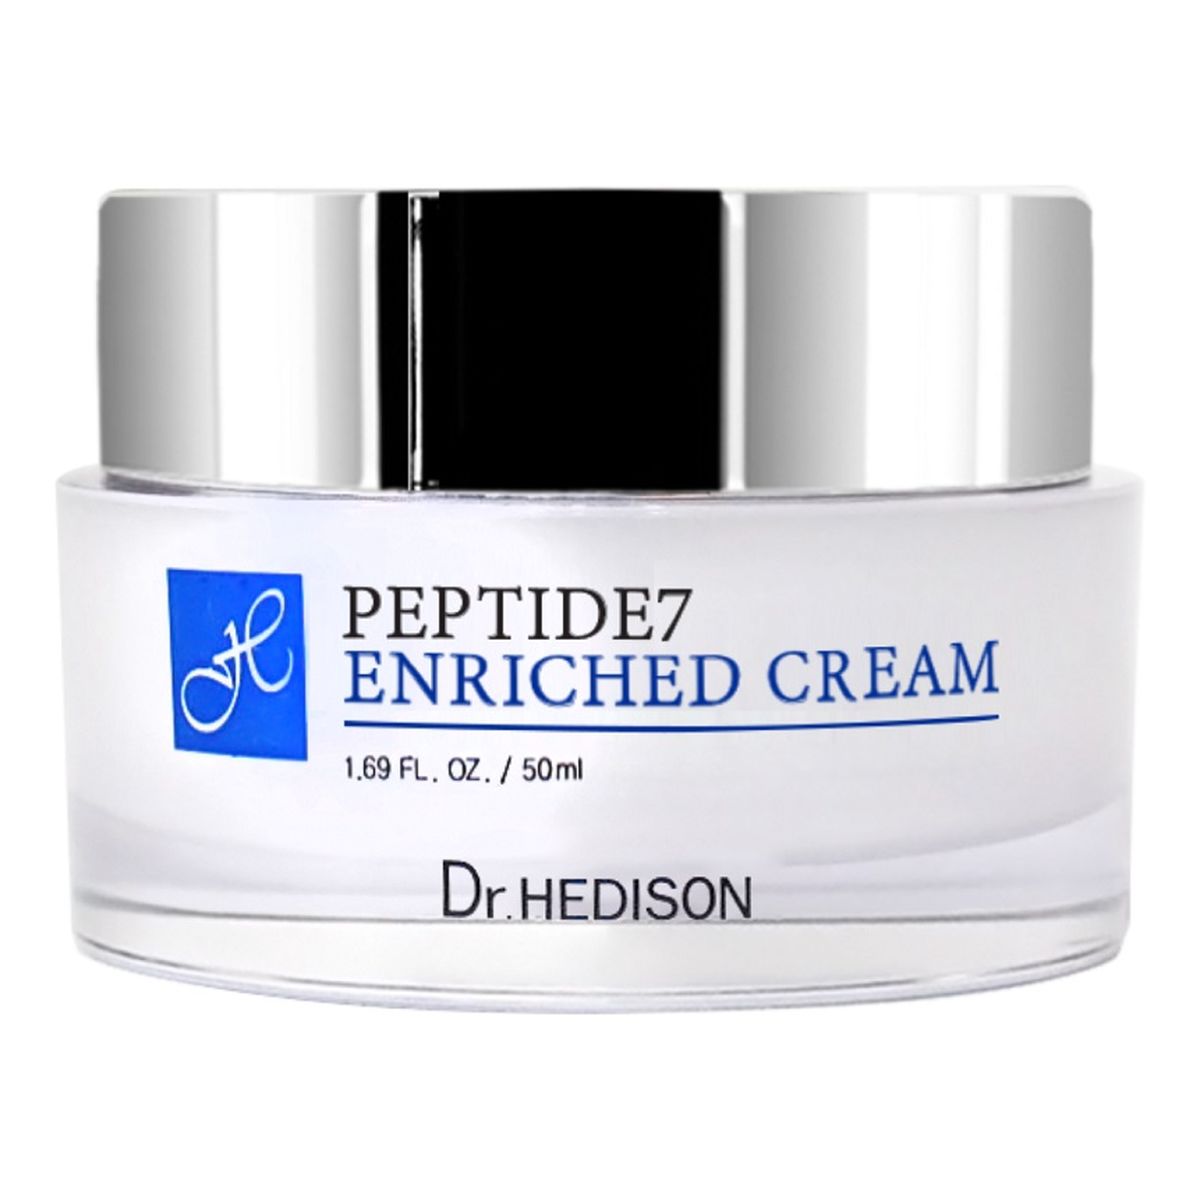 Dr.HEDISON Peptide 7 Enriched Cream odmładzający Krem do twarzy 50ml